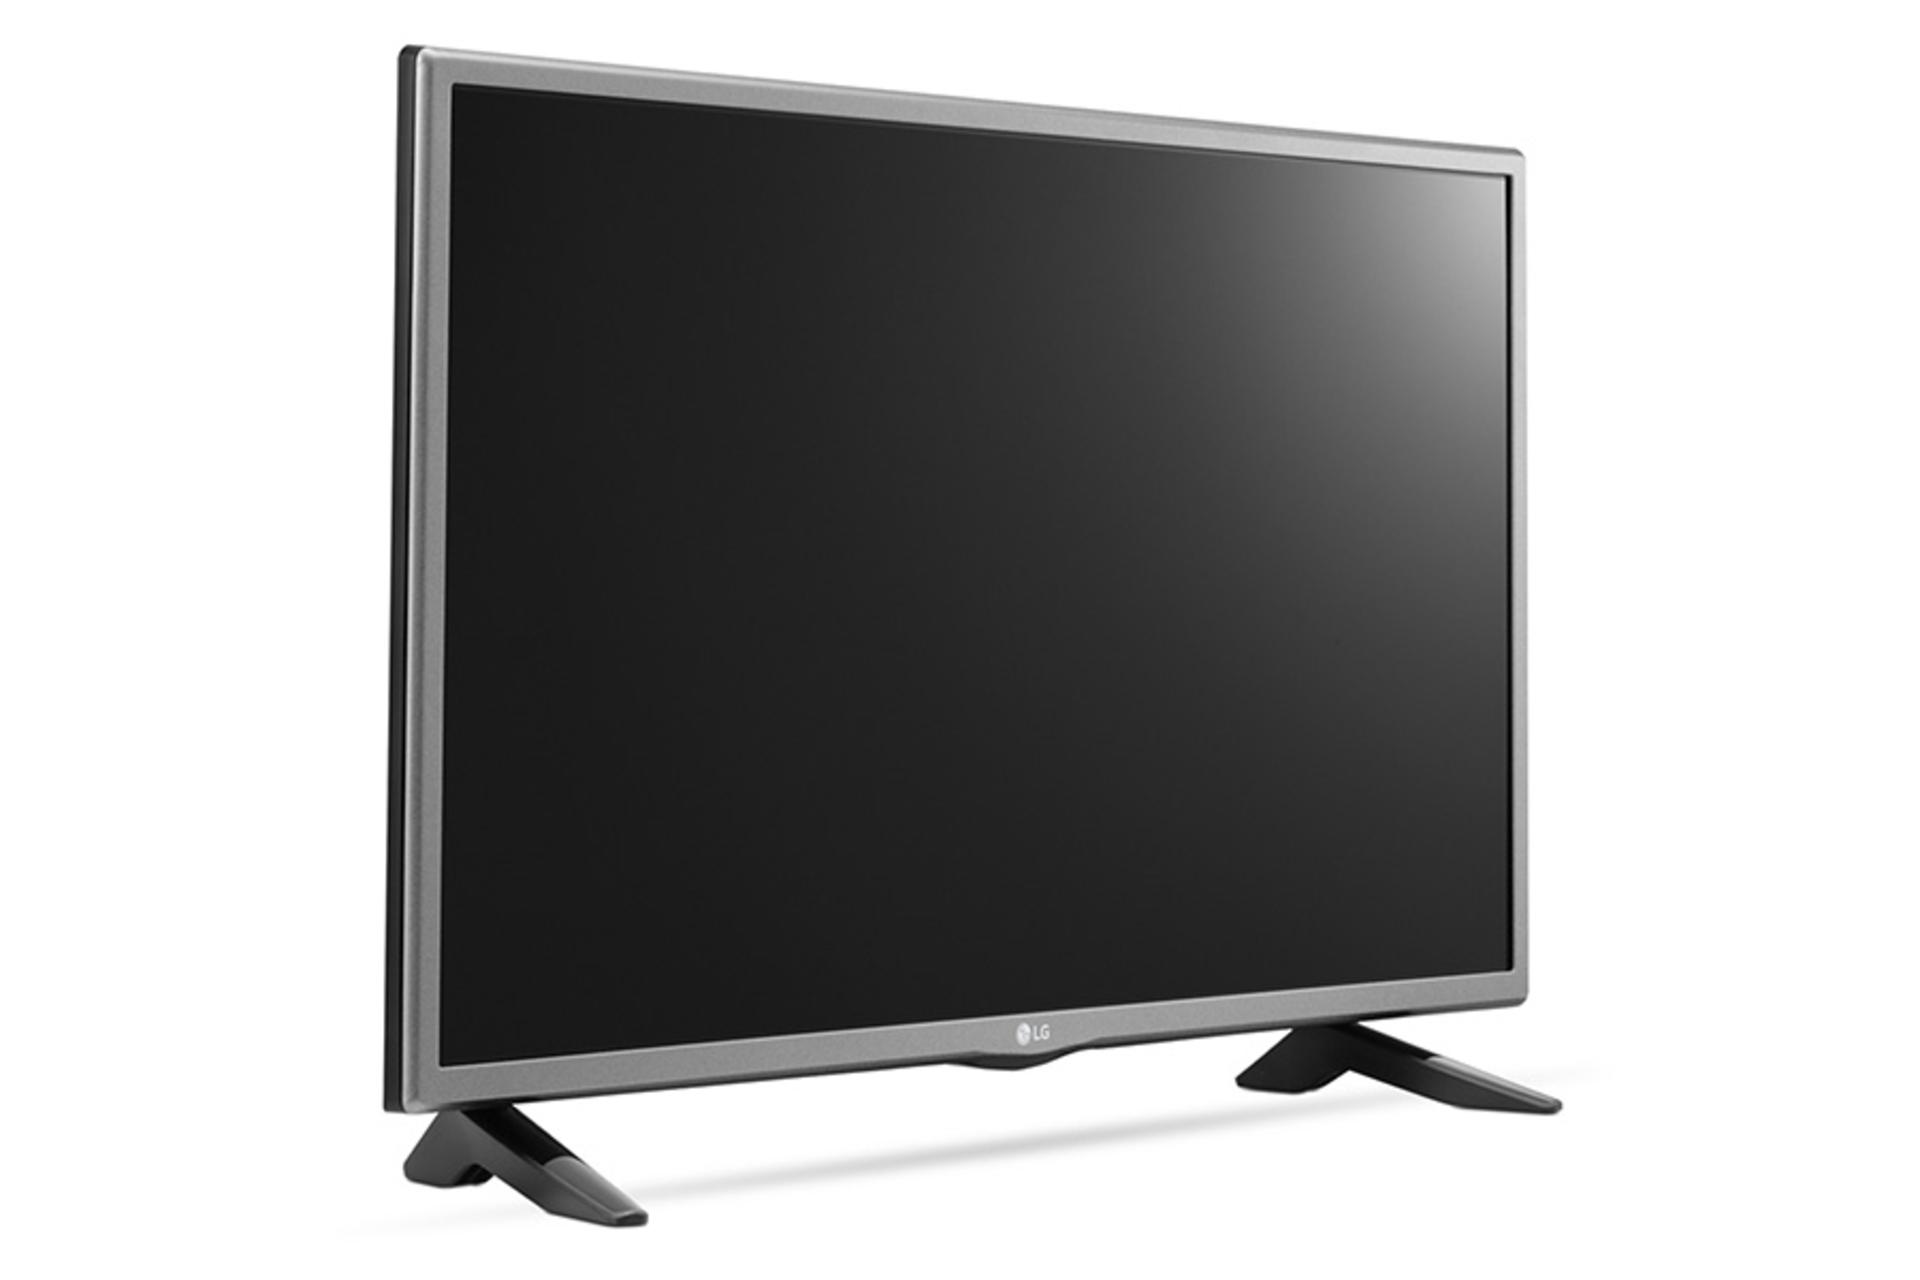 نمای کنار تلویزیون LF510D مدل 32 اینچ با صفحه خاموش